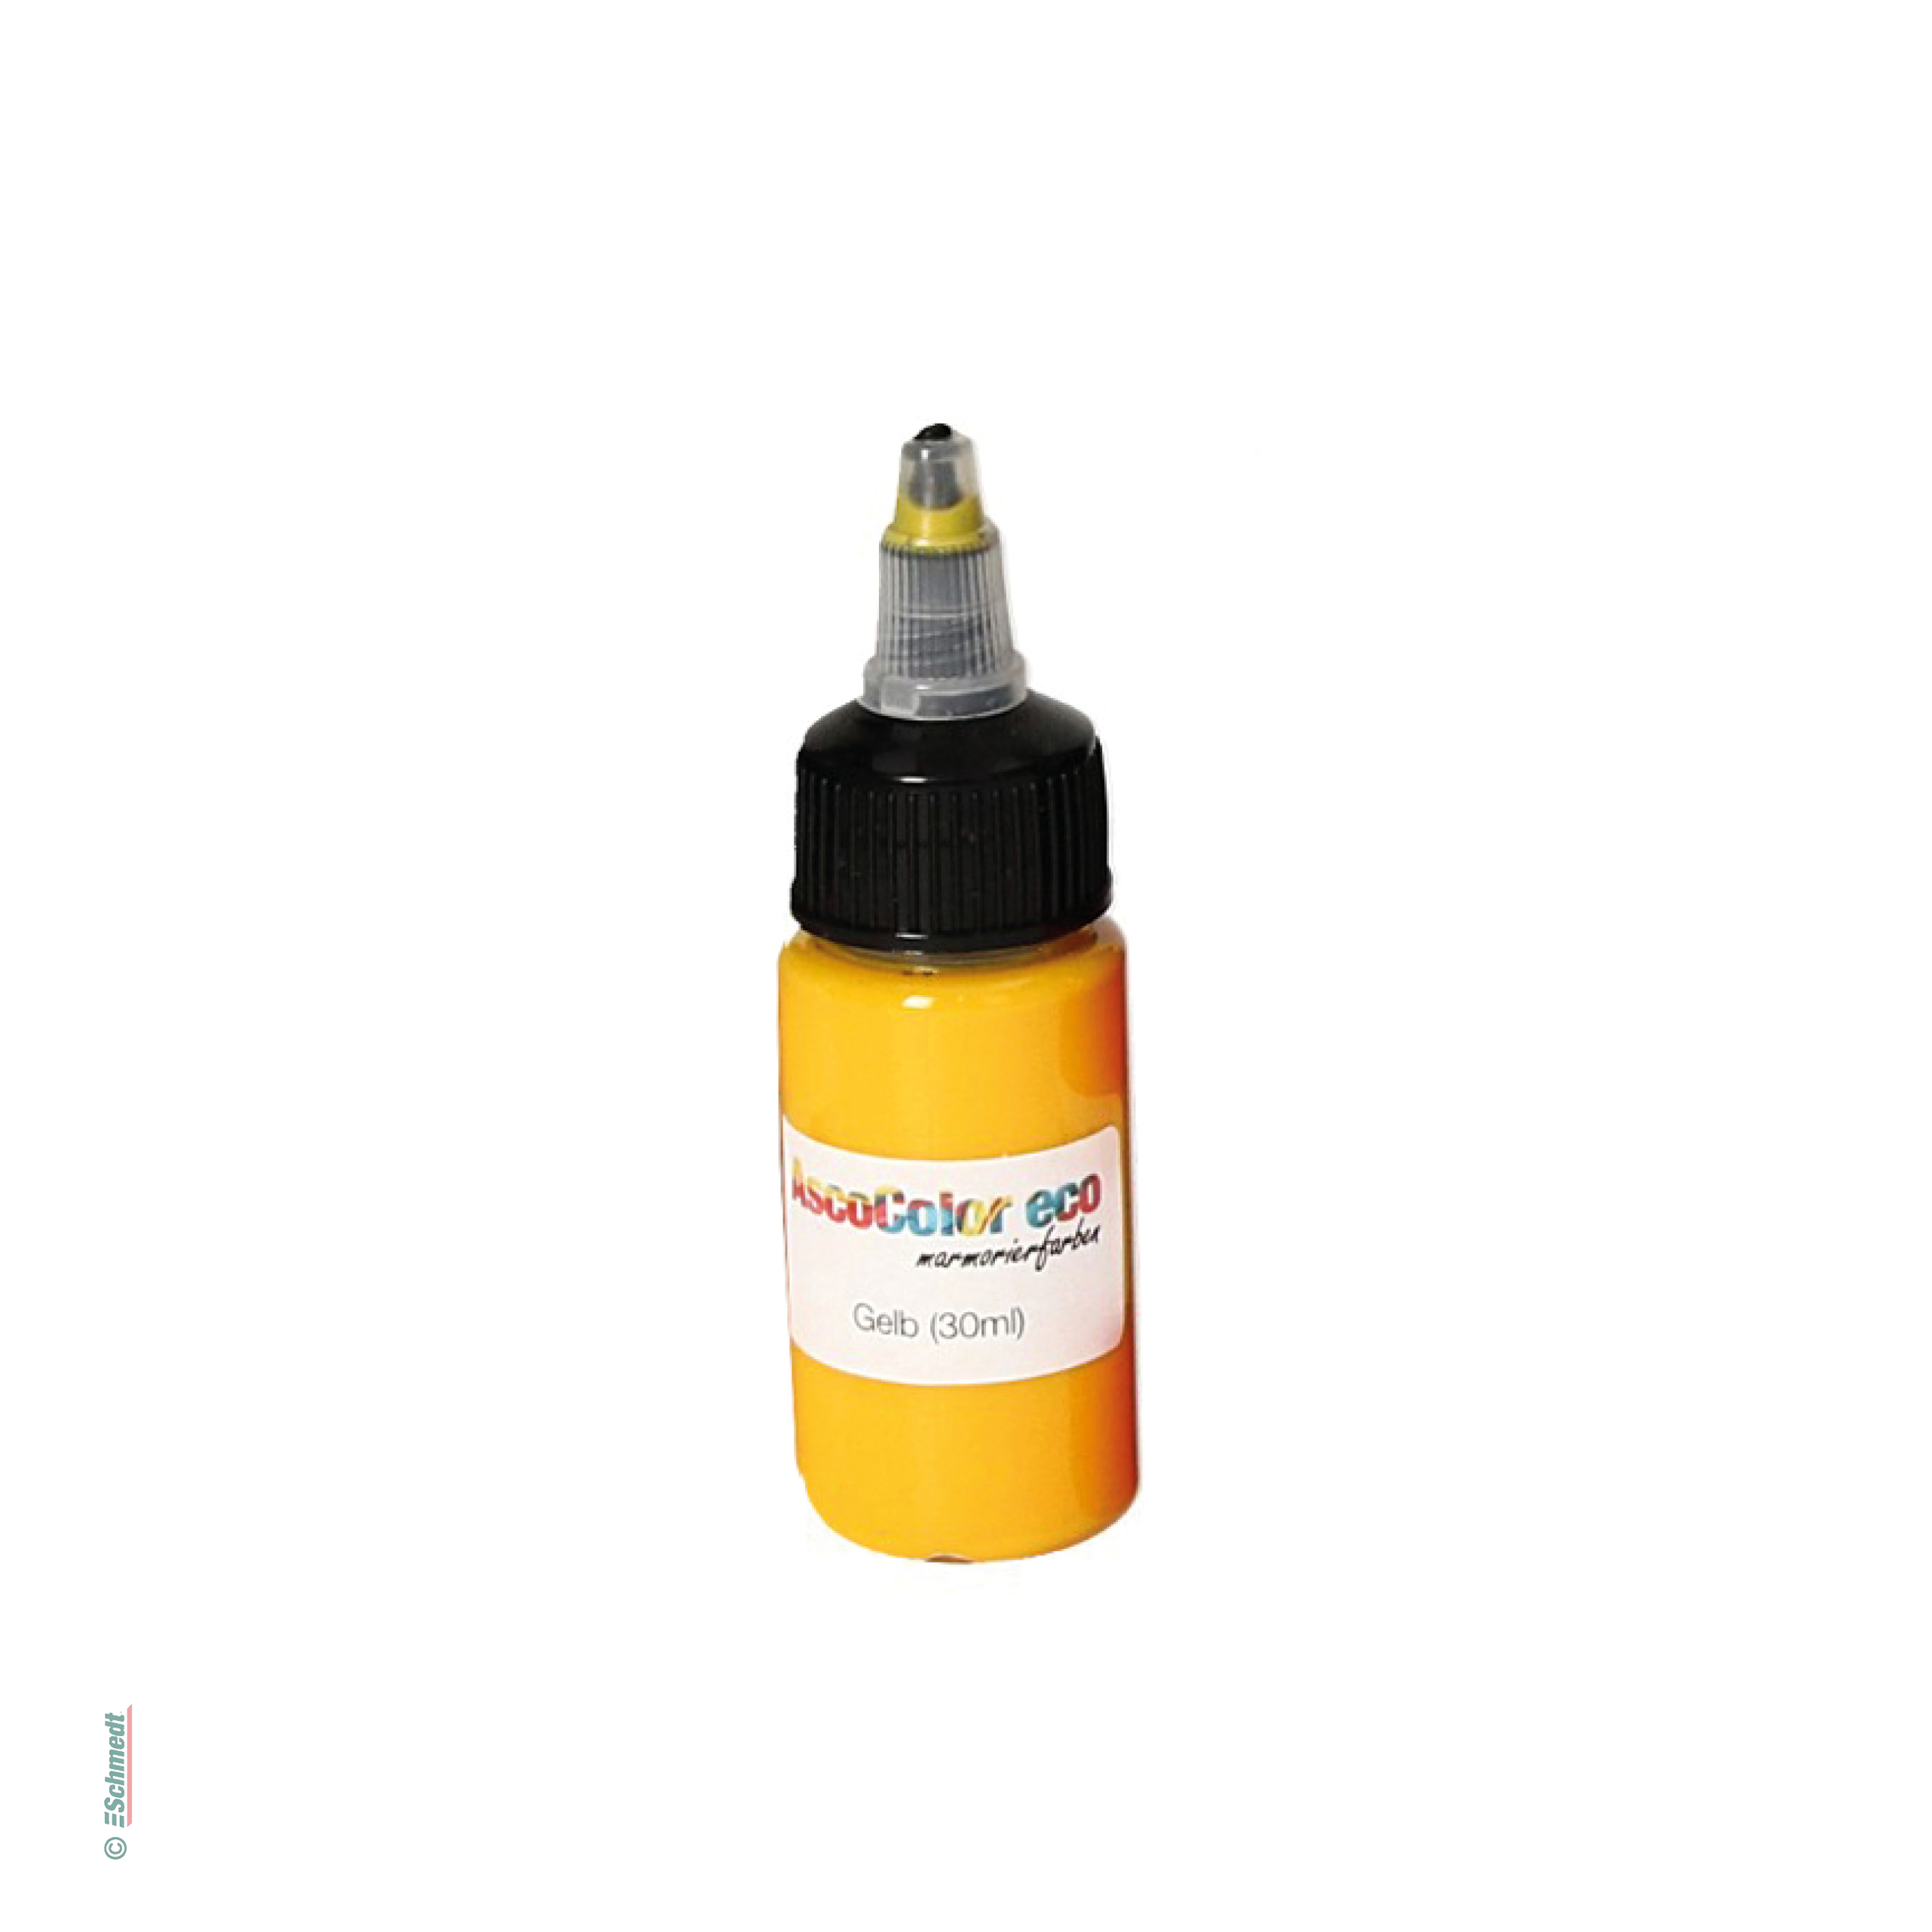 AscoColor eco - Pintura para marmolar - Color 101 - amarillo - Contenido Botella / 30 ml - Aplicación: para crear sus propios papeles marmol...